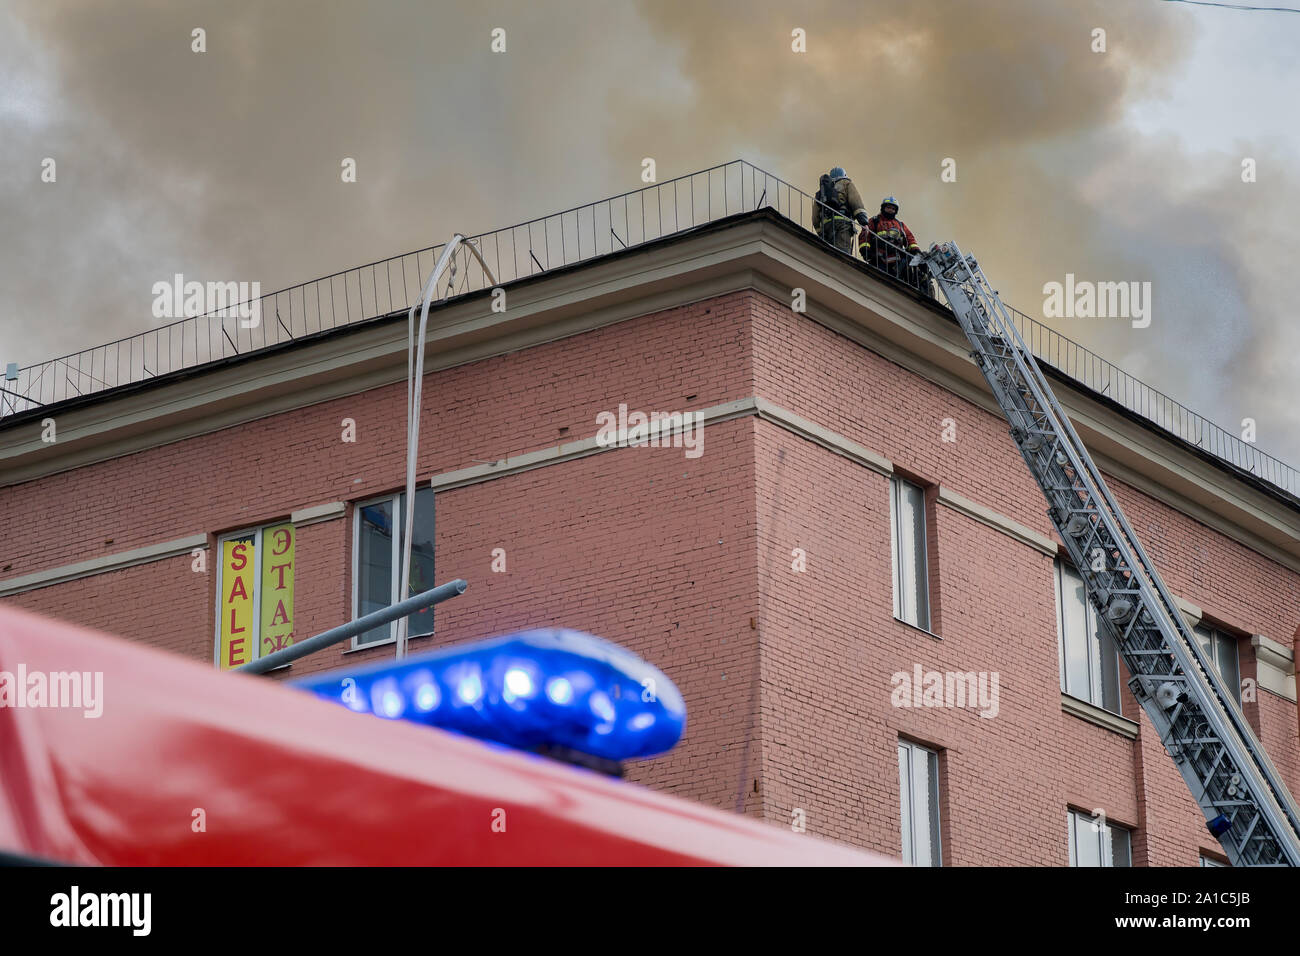 Saint-pétersbourg, Russie - le 14 août 2019 - Incendie dans le centre de bureau 'Leningrad', les pompiers et les services d'urgence sur les lieux Banque D'Images